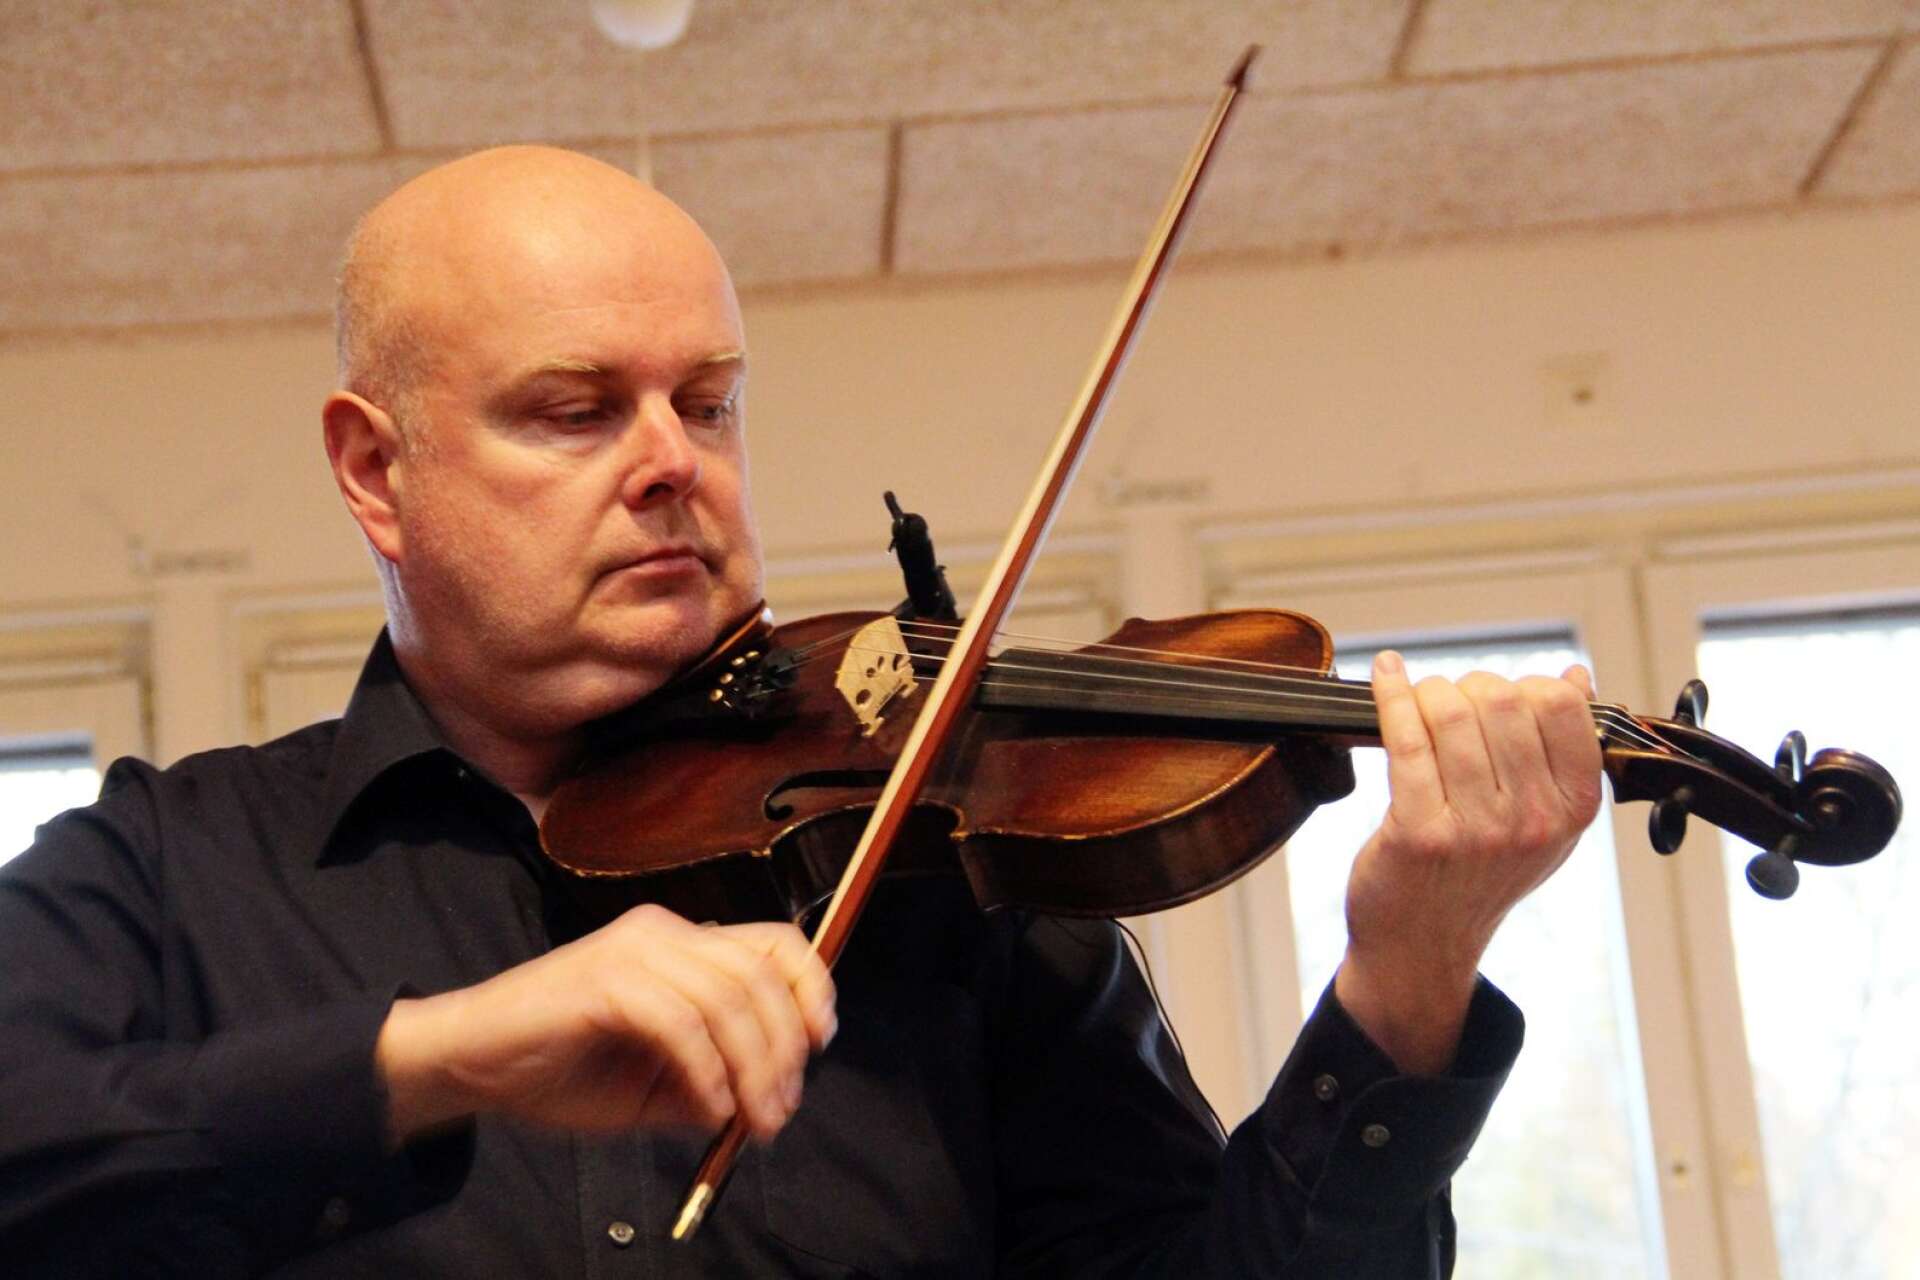 David Norlin, till vardags undervisande på fiol
 vid Kulturskolan, visade med sina kollegor talang och snickrade skyddsskärmar.